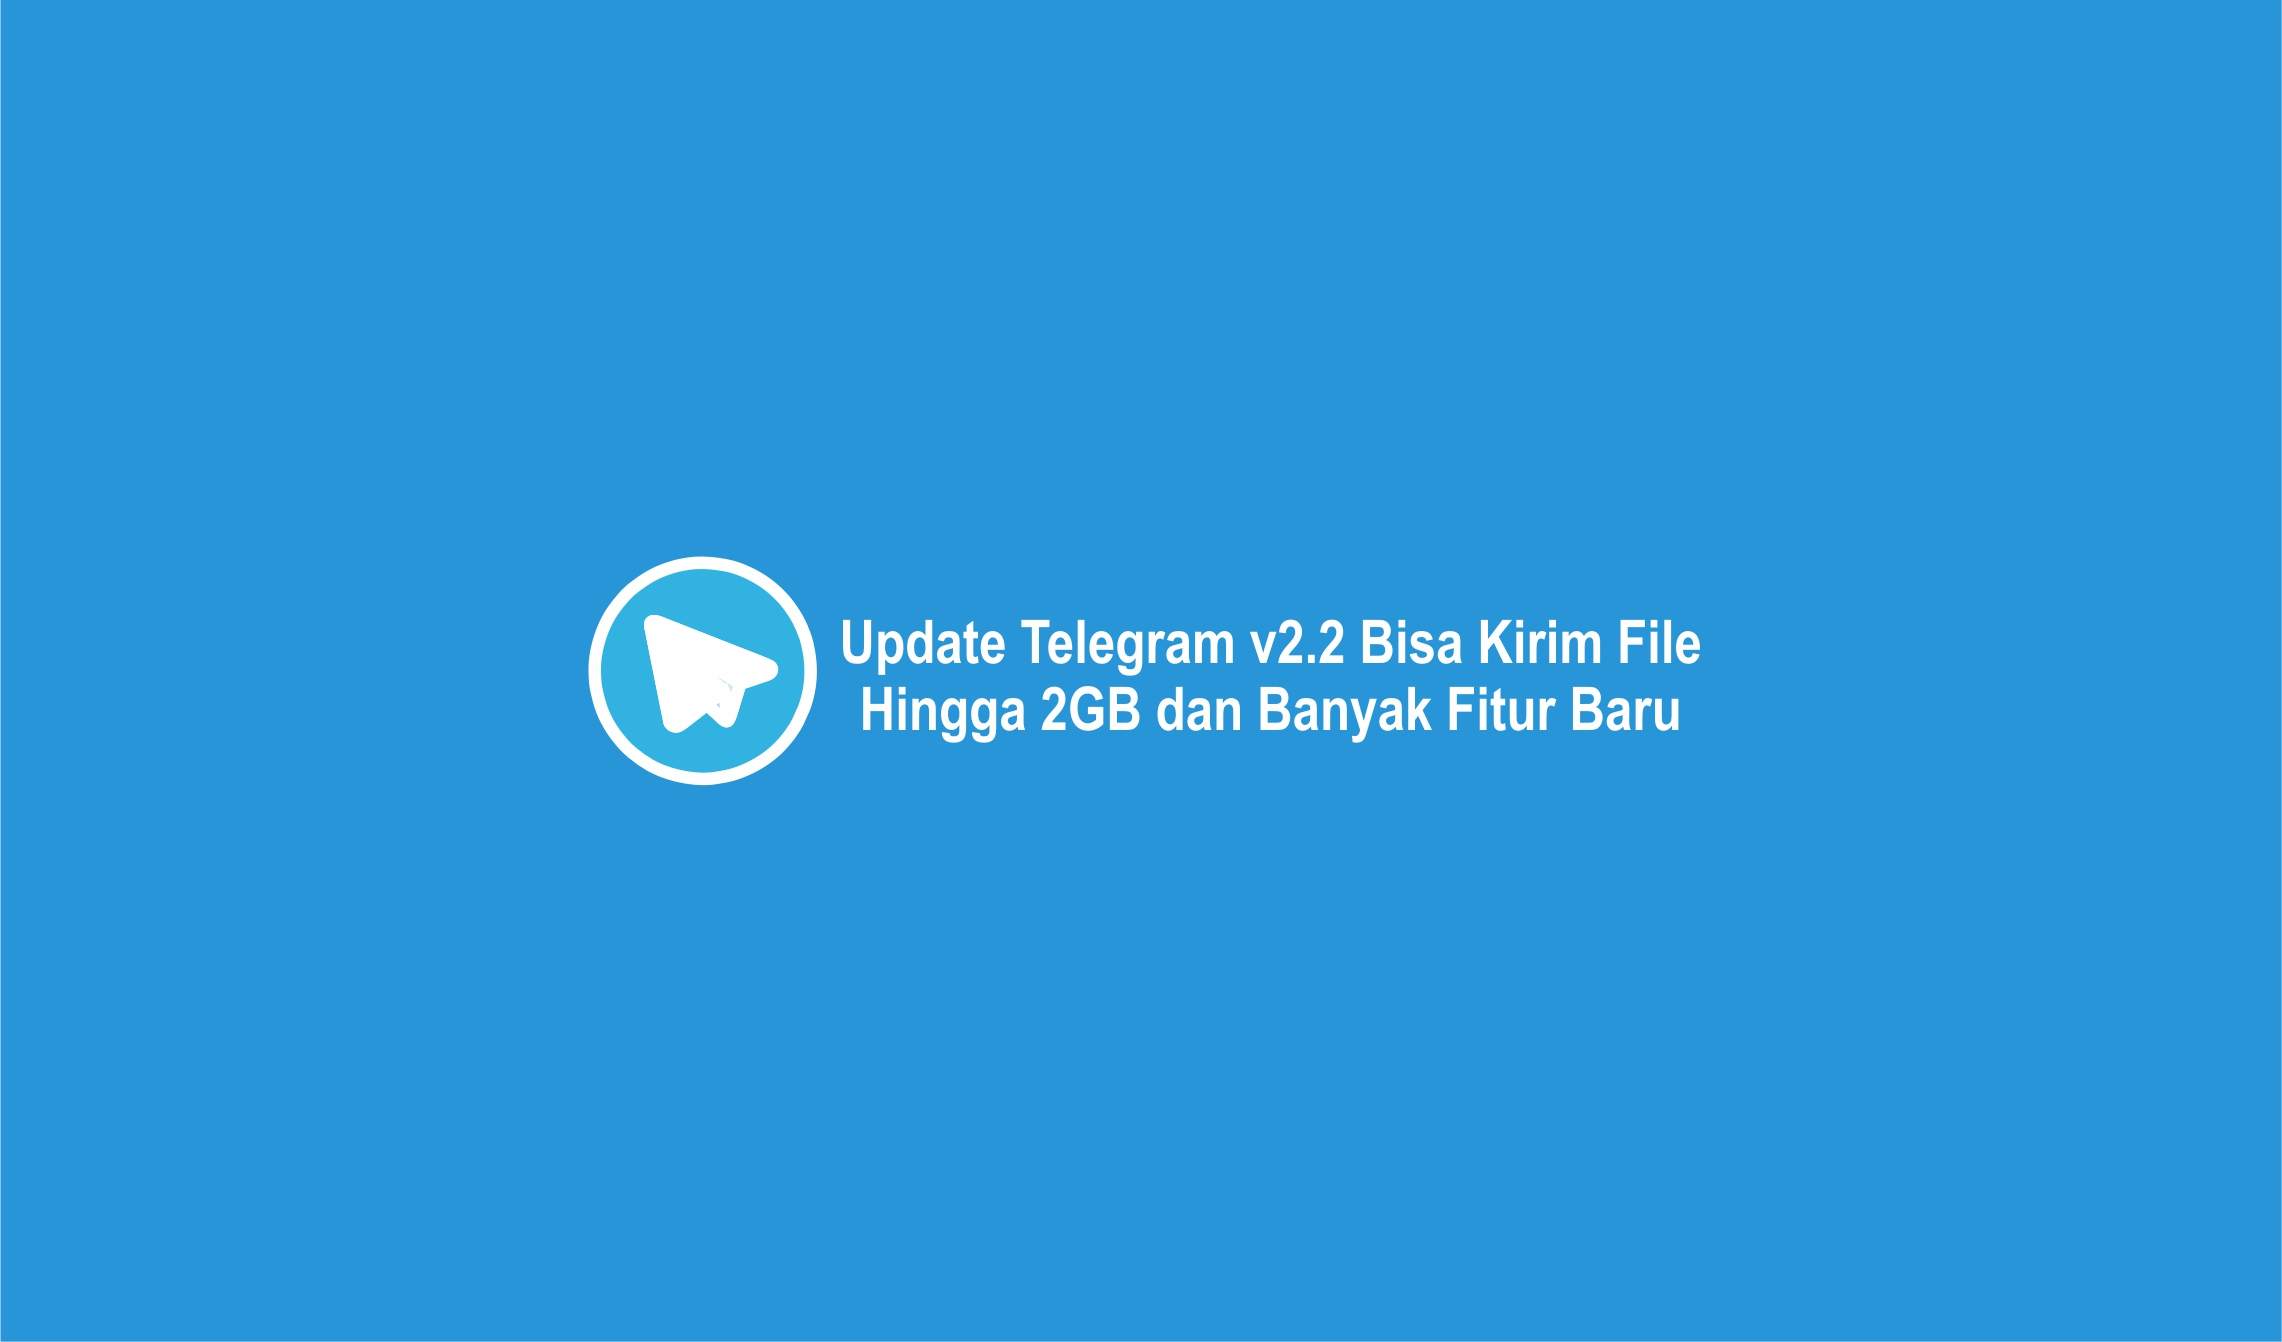 Telegram v2.2 Bisa Kirim File Hingga 2GB dan Banyak Fitur Baru